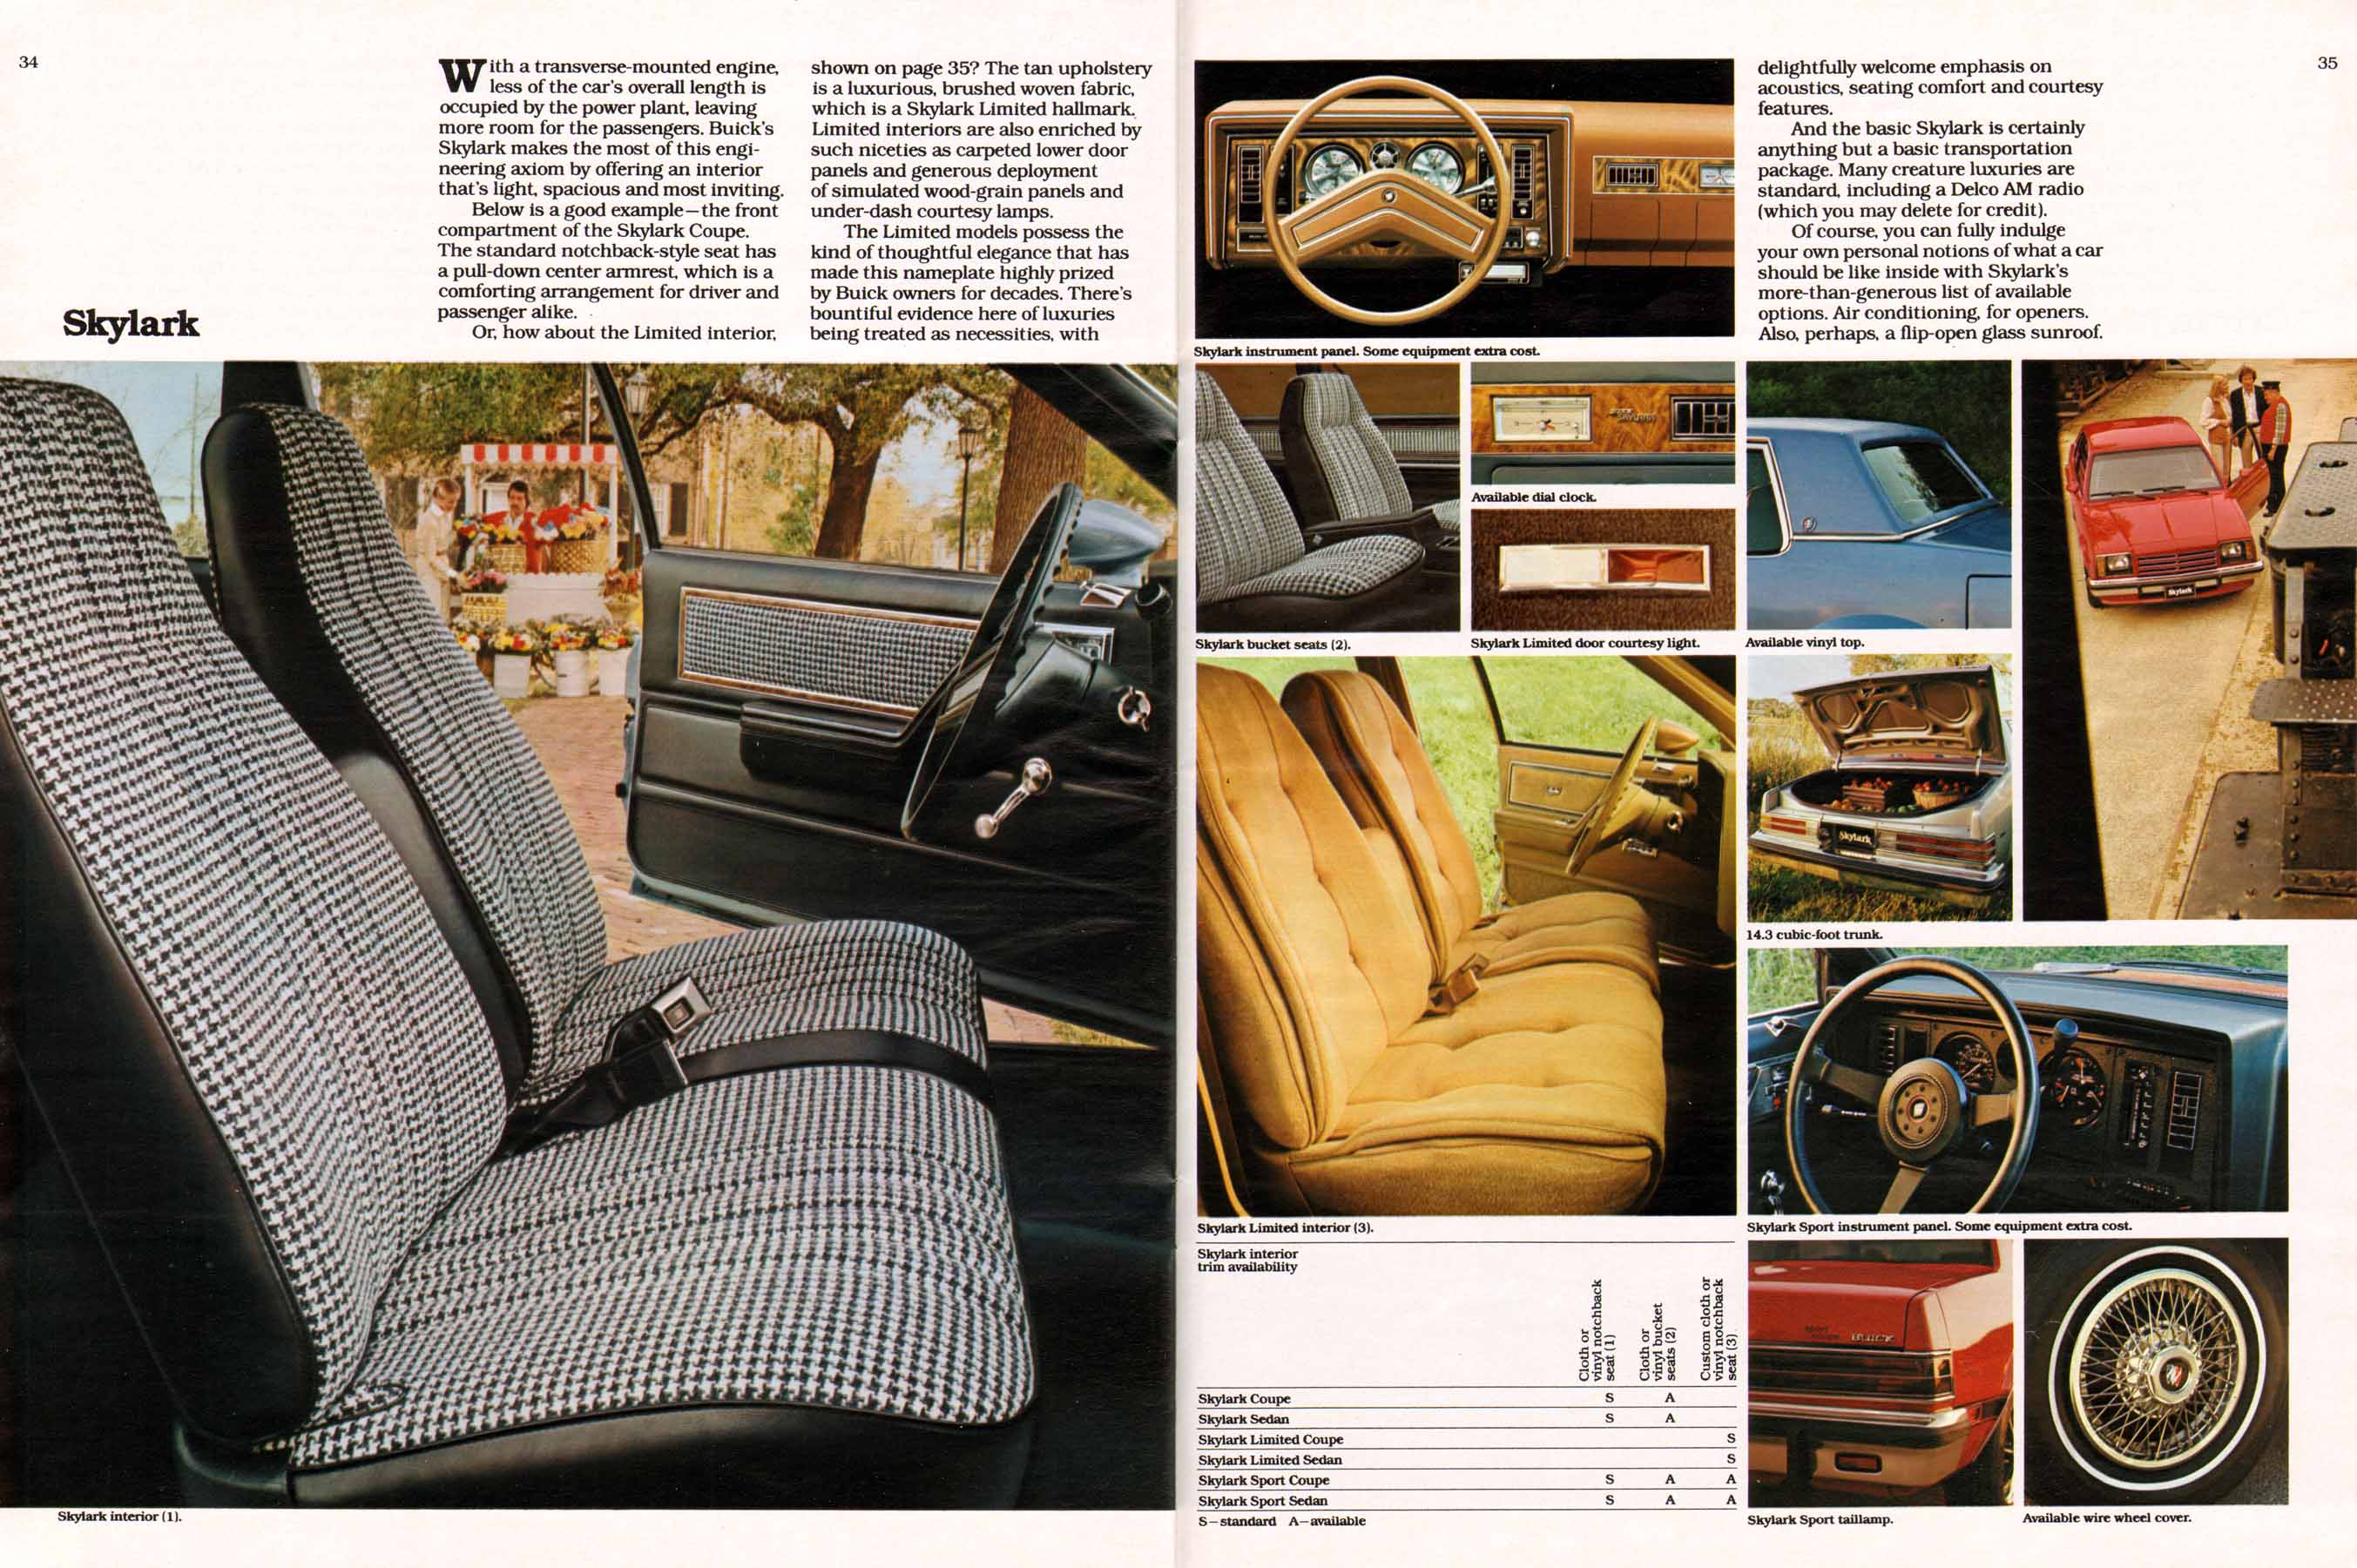 1980 Buick Full Line Prestige-34-35